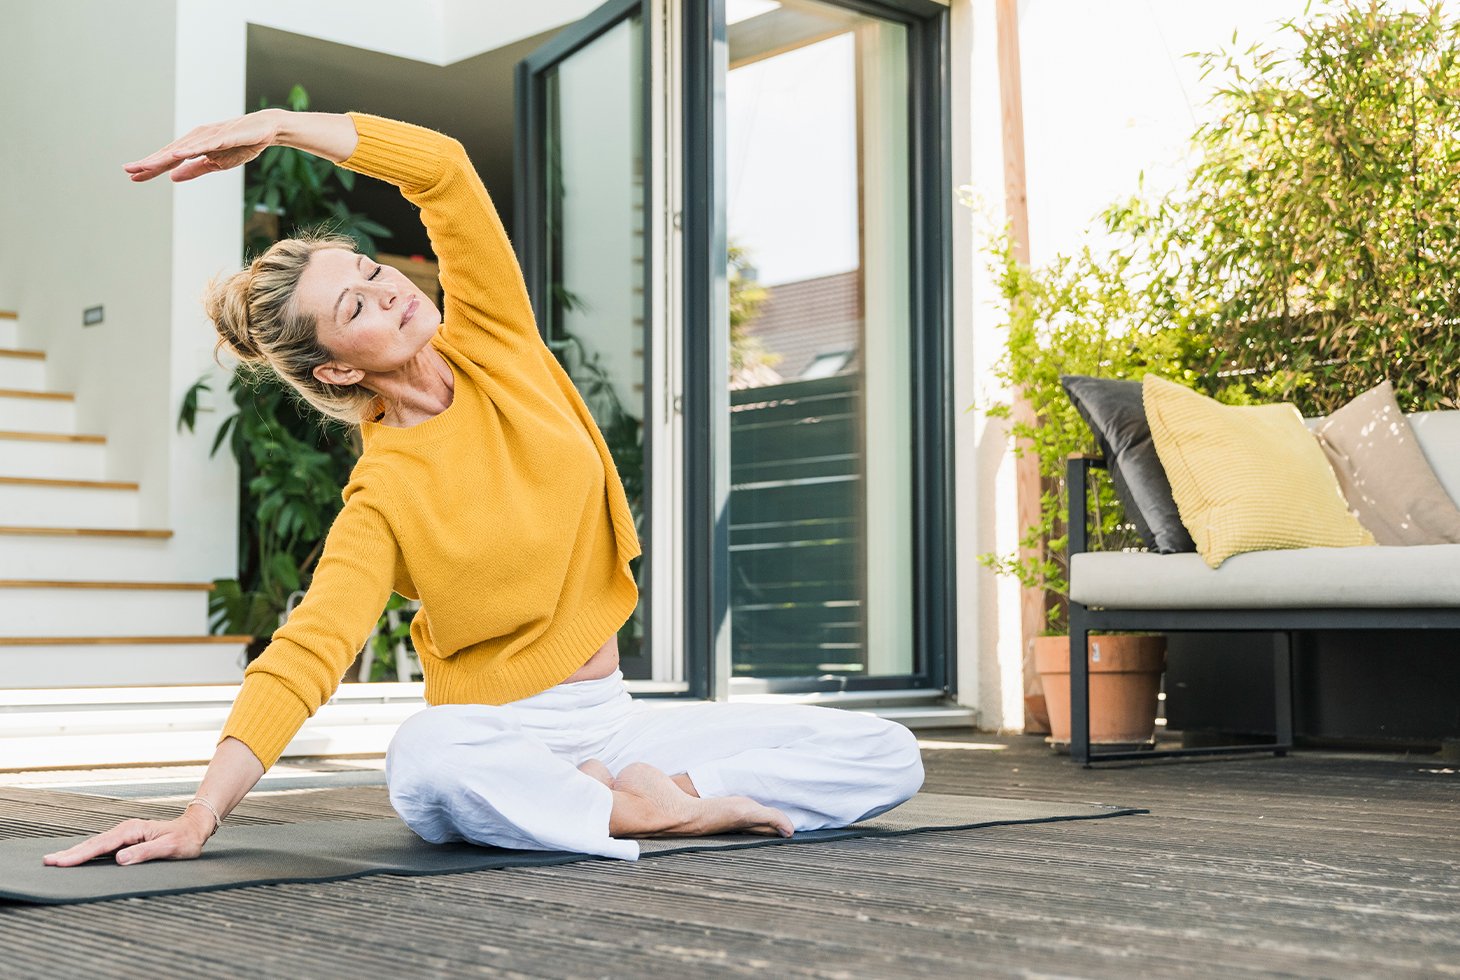 Femme effectuant une posture de Yoga (étirements en position assise), une activité sportive recommandée pour le renforcement des muscles du périnée